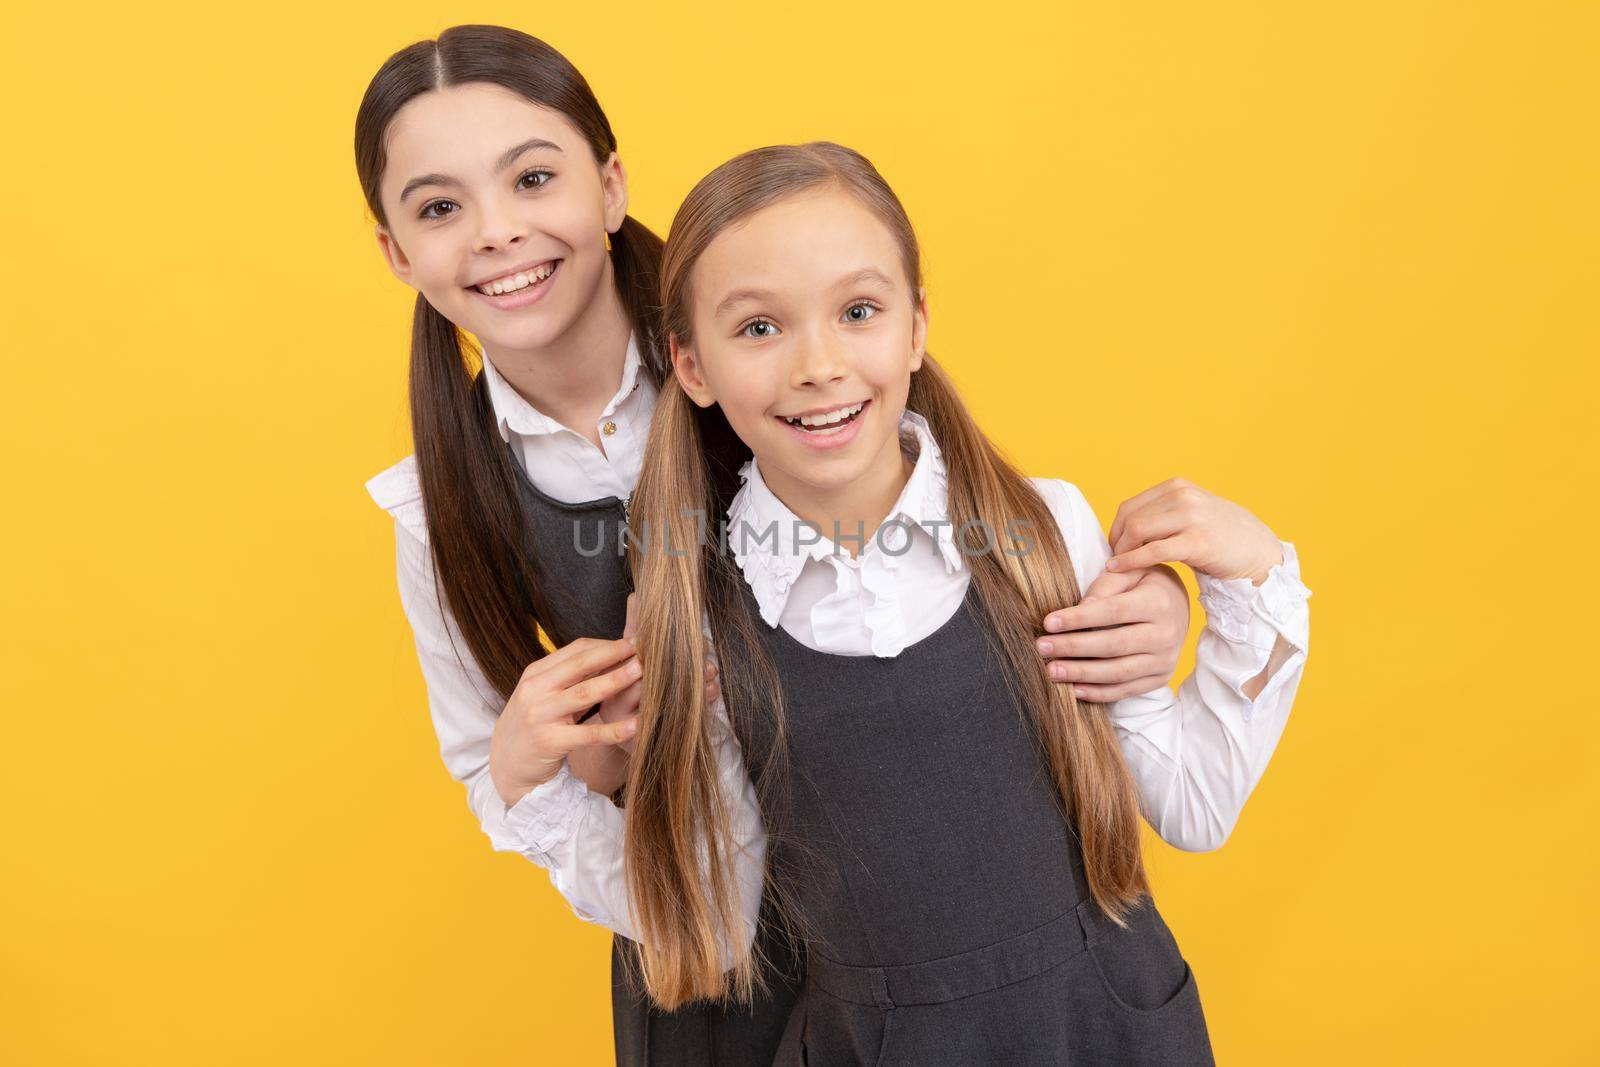 Happy school kids with beauty look wear long hair in formal uniforms yellow background, salon.